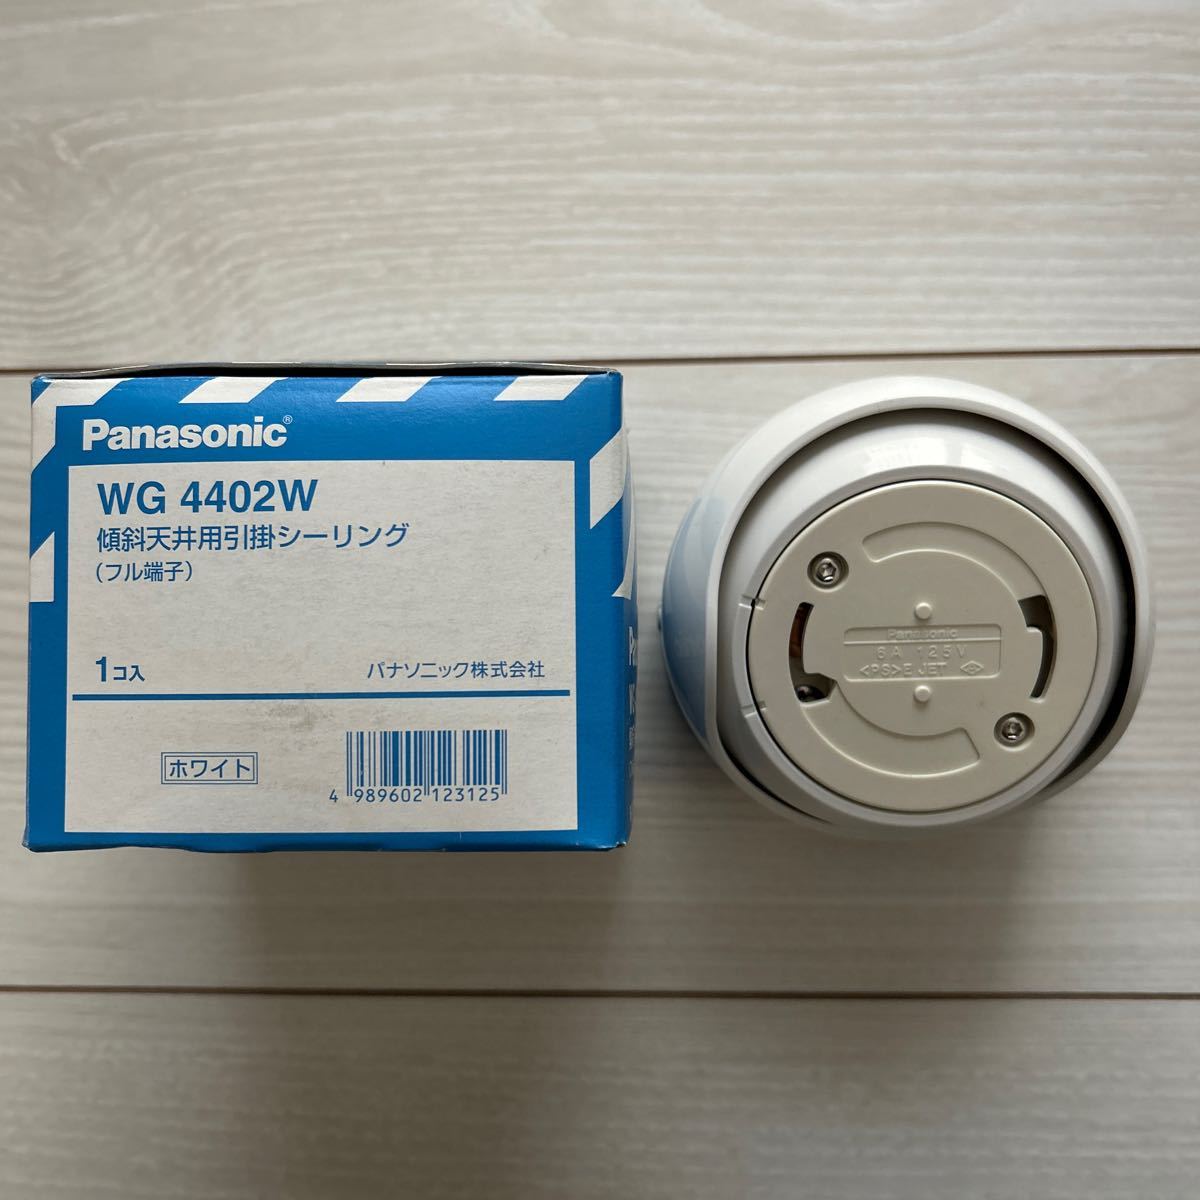 [F59]Panasonic WG4402W наклонение потолок для .. изоляция ( полный терминал ) белый Panasonic 